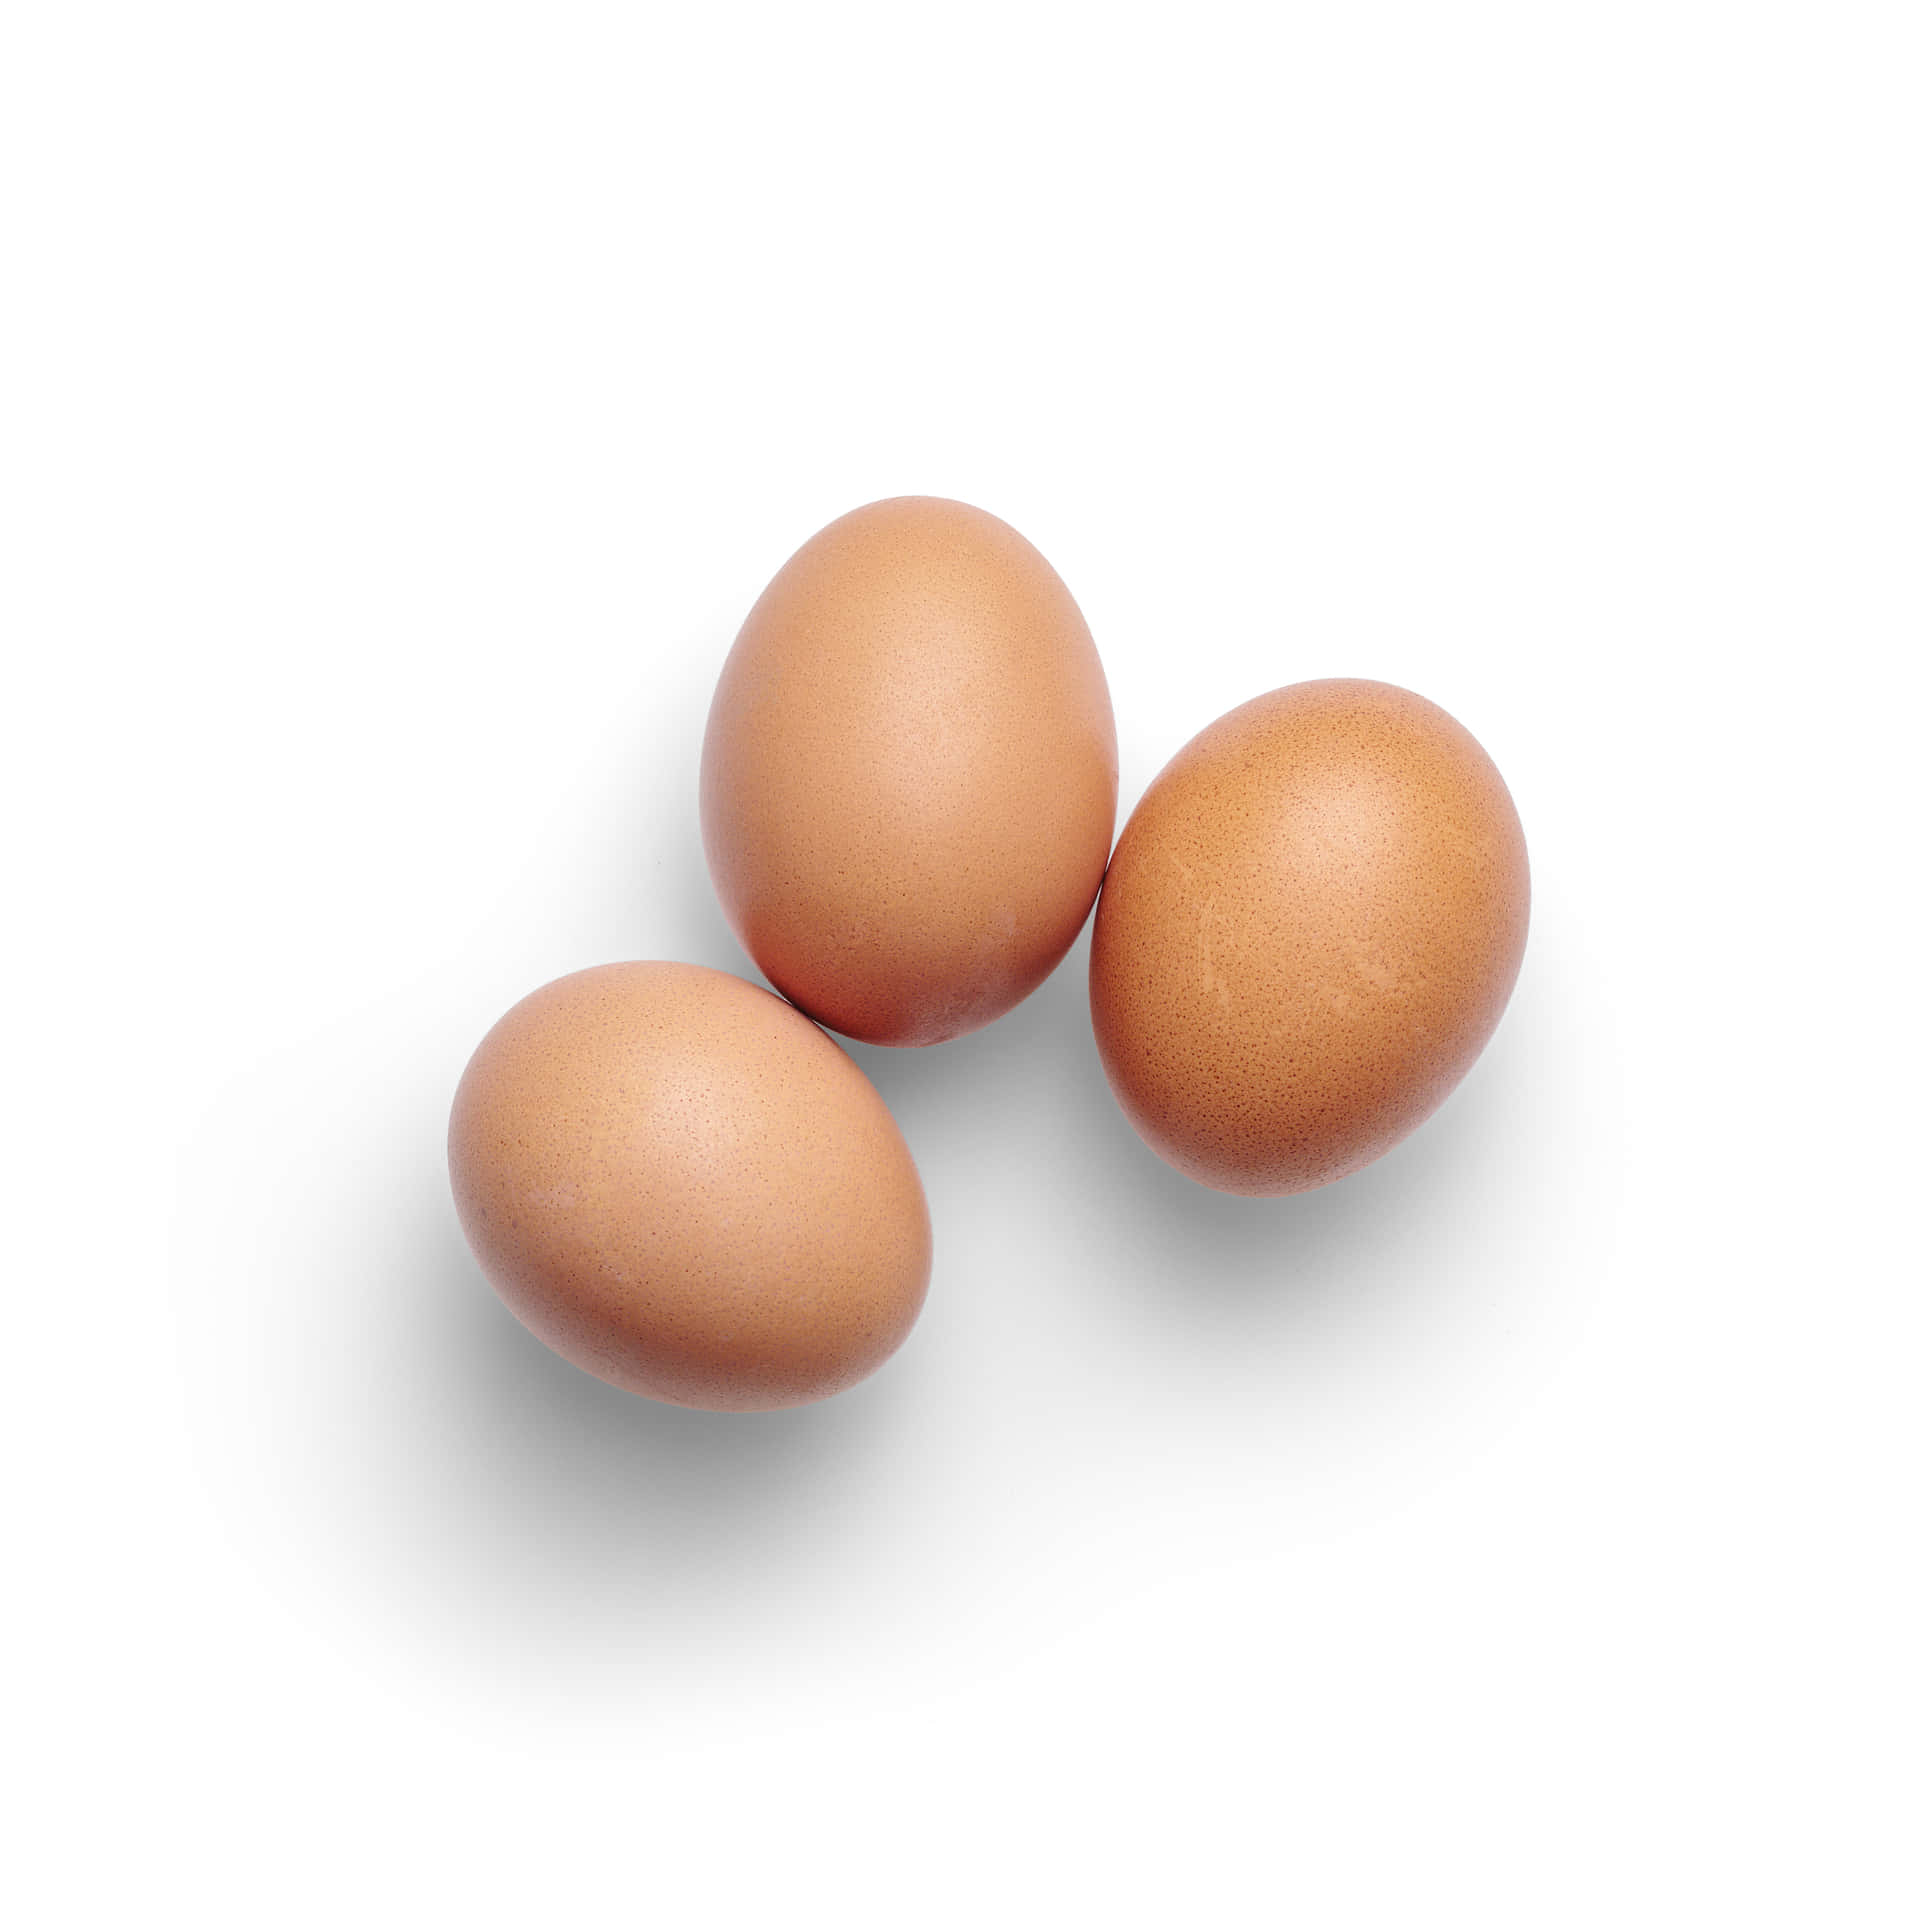 Dreibraune Eier Auf Einem Weißen Hintergrund.